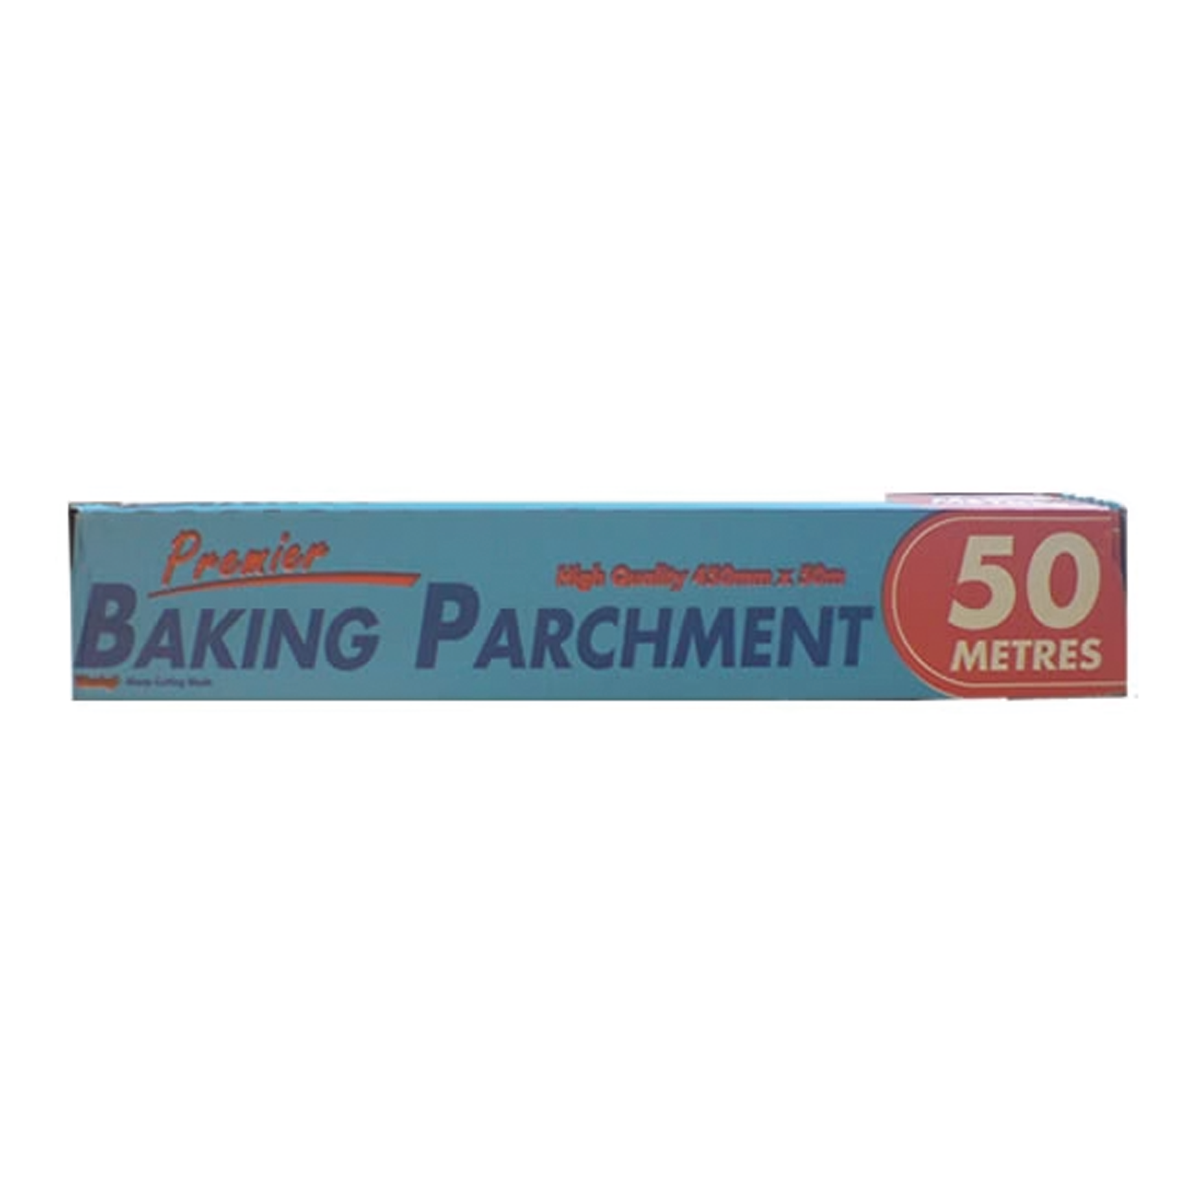 Baking Parchment 50m